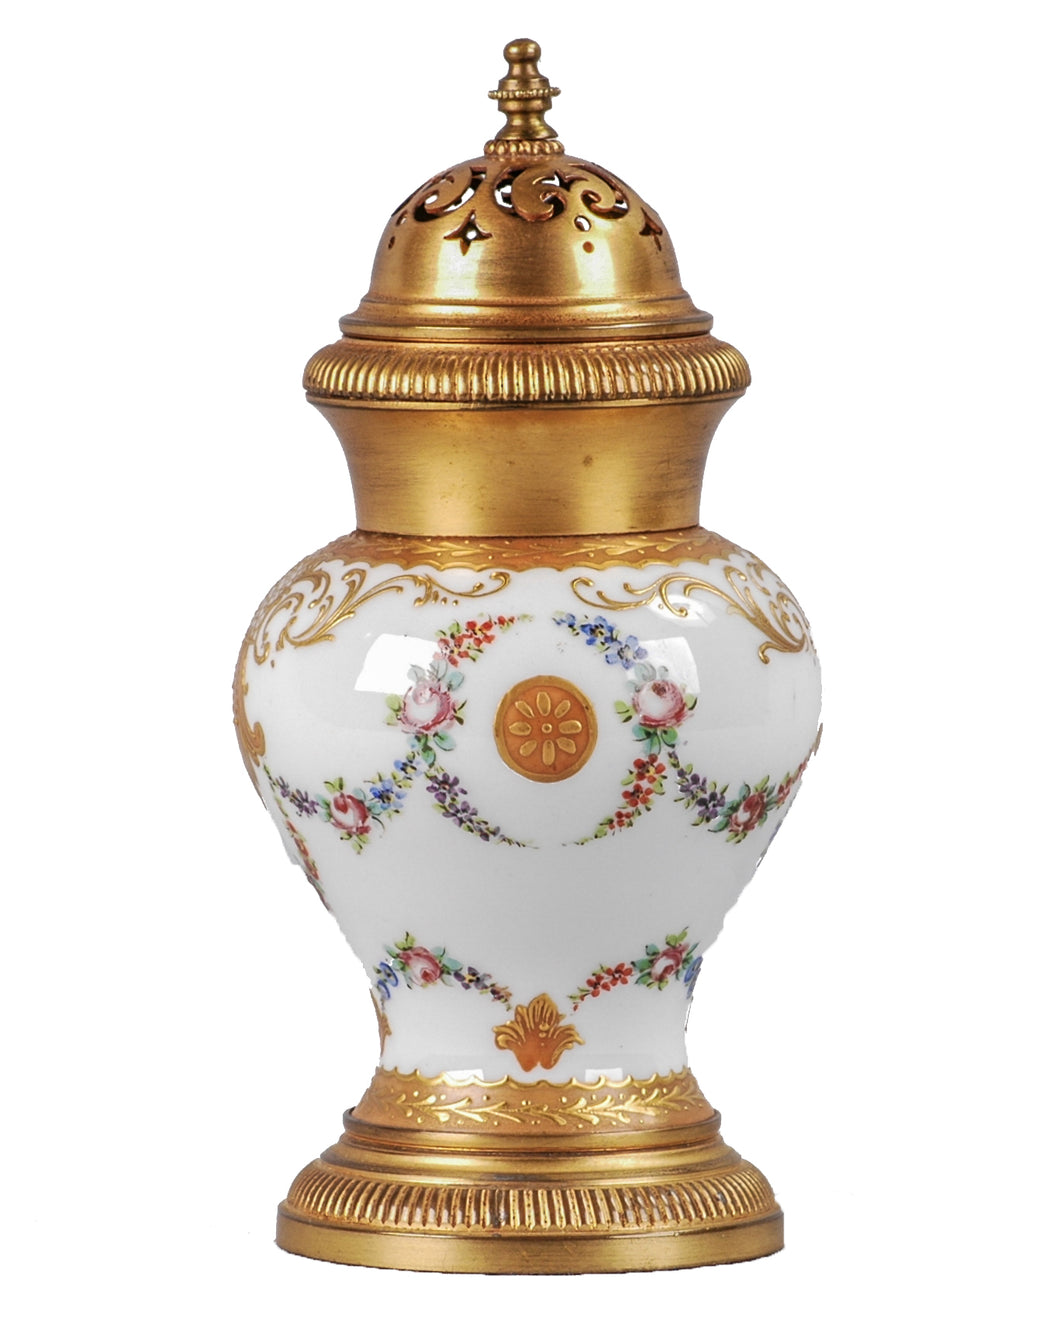 Antique Sèvres porcelain and ormolu incense burner, France